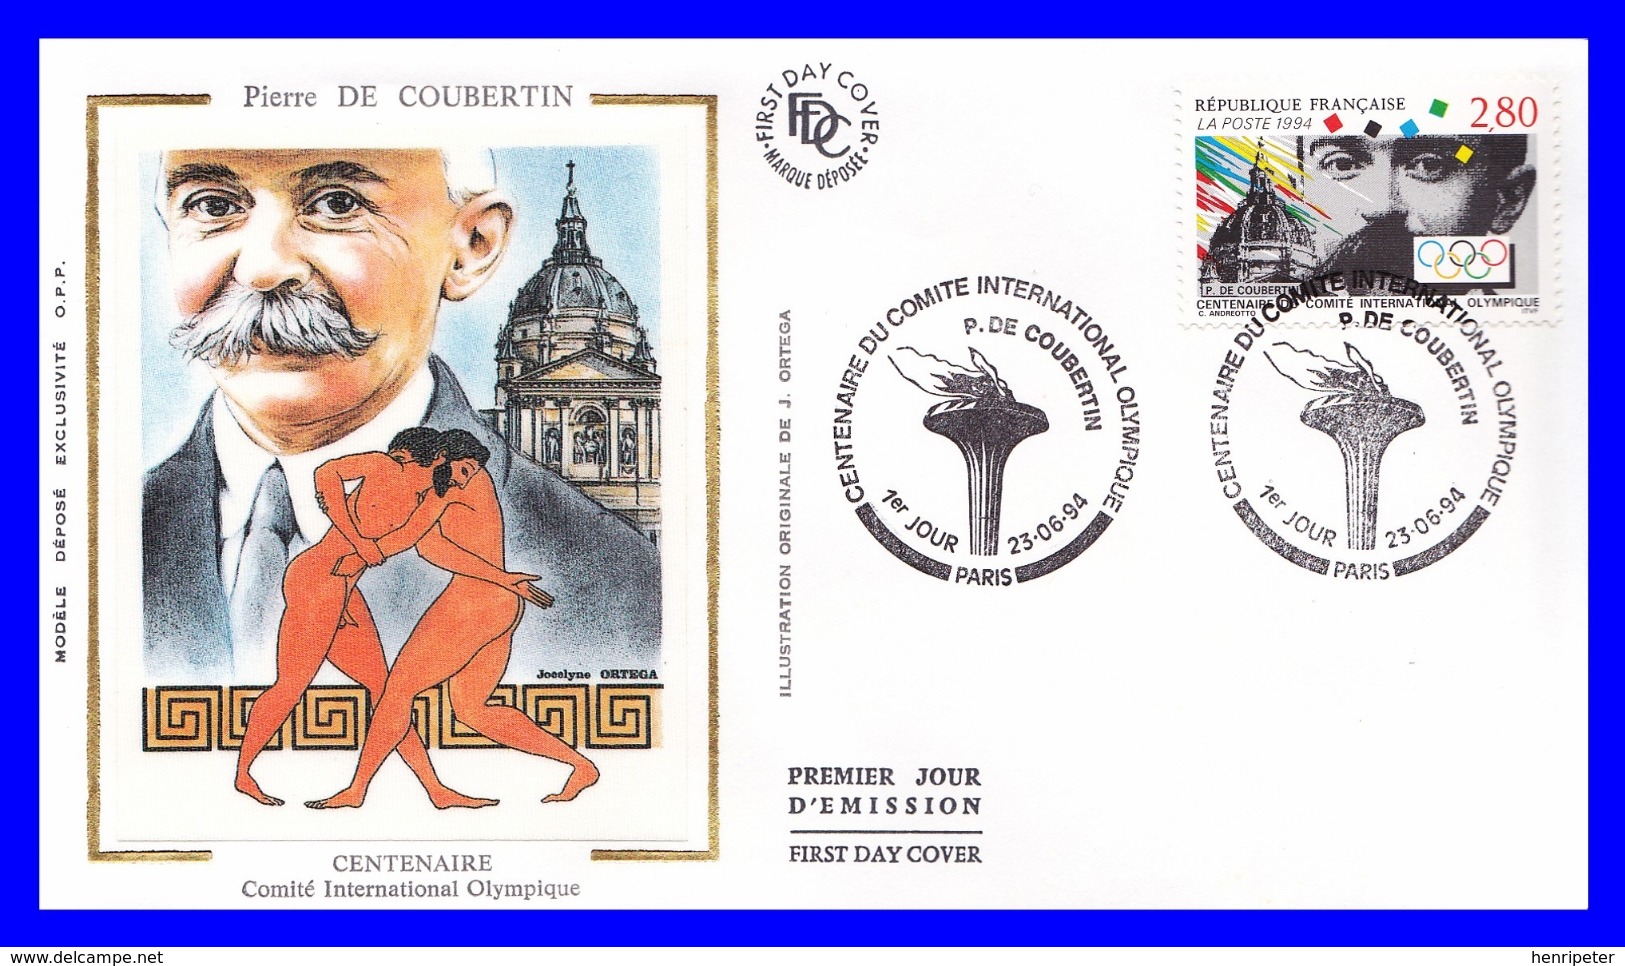 2889 (Yvert) Sur FDC Illustrée Sur Soie - Centenaire Du Comité International Olympique Pierre De Coubertin - France 1994 - 1990-1999